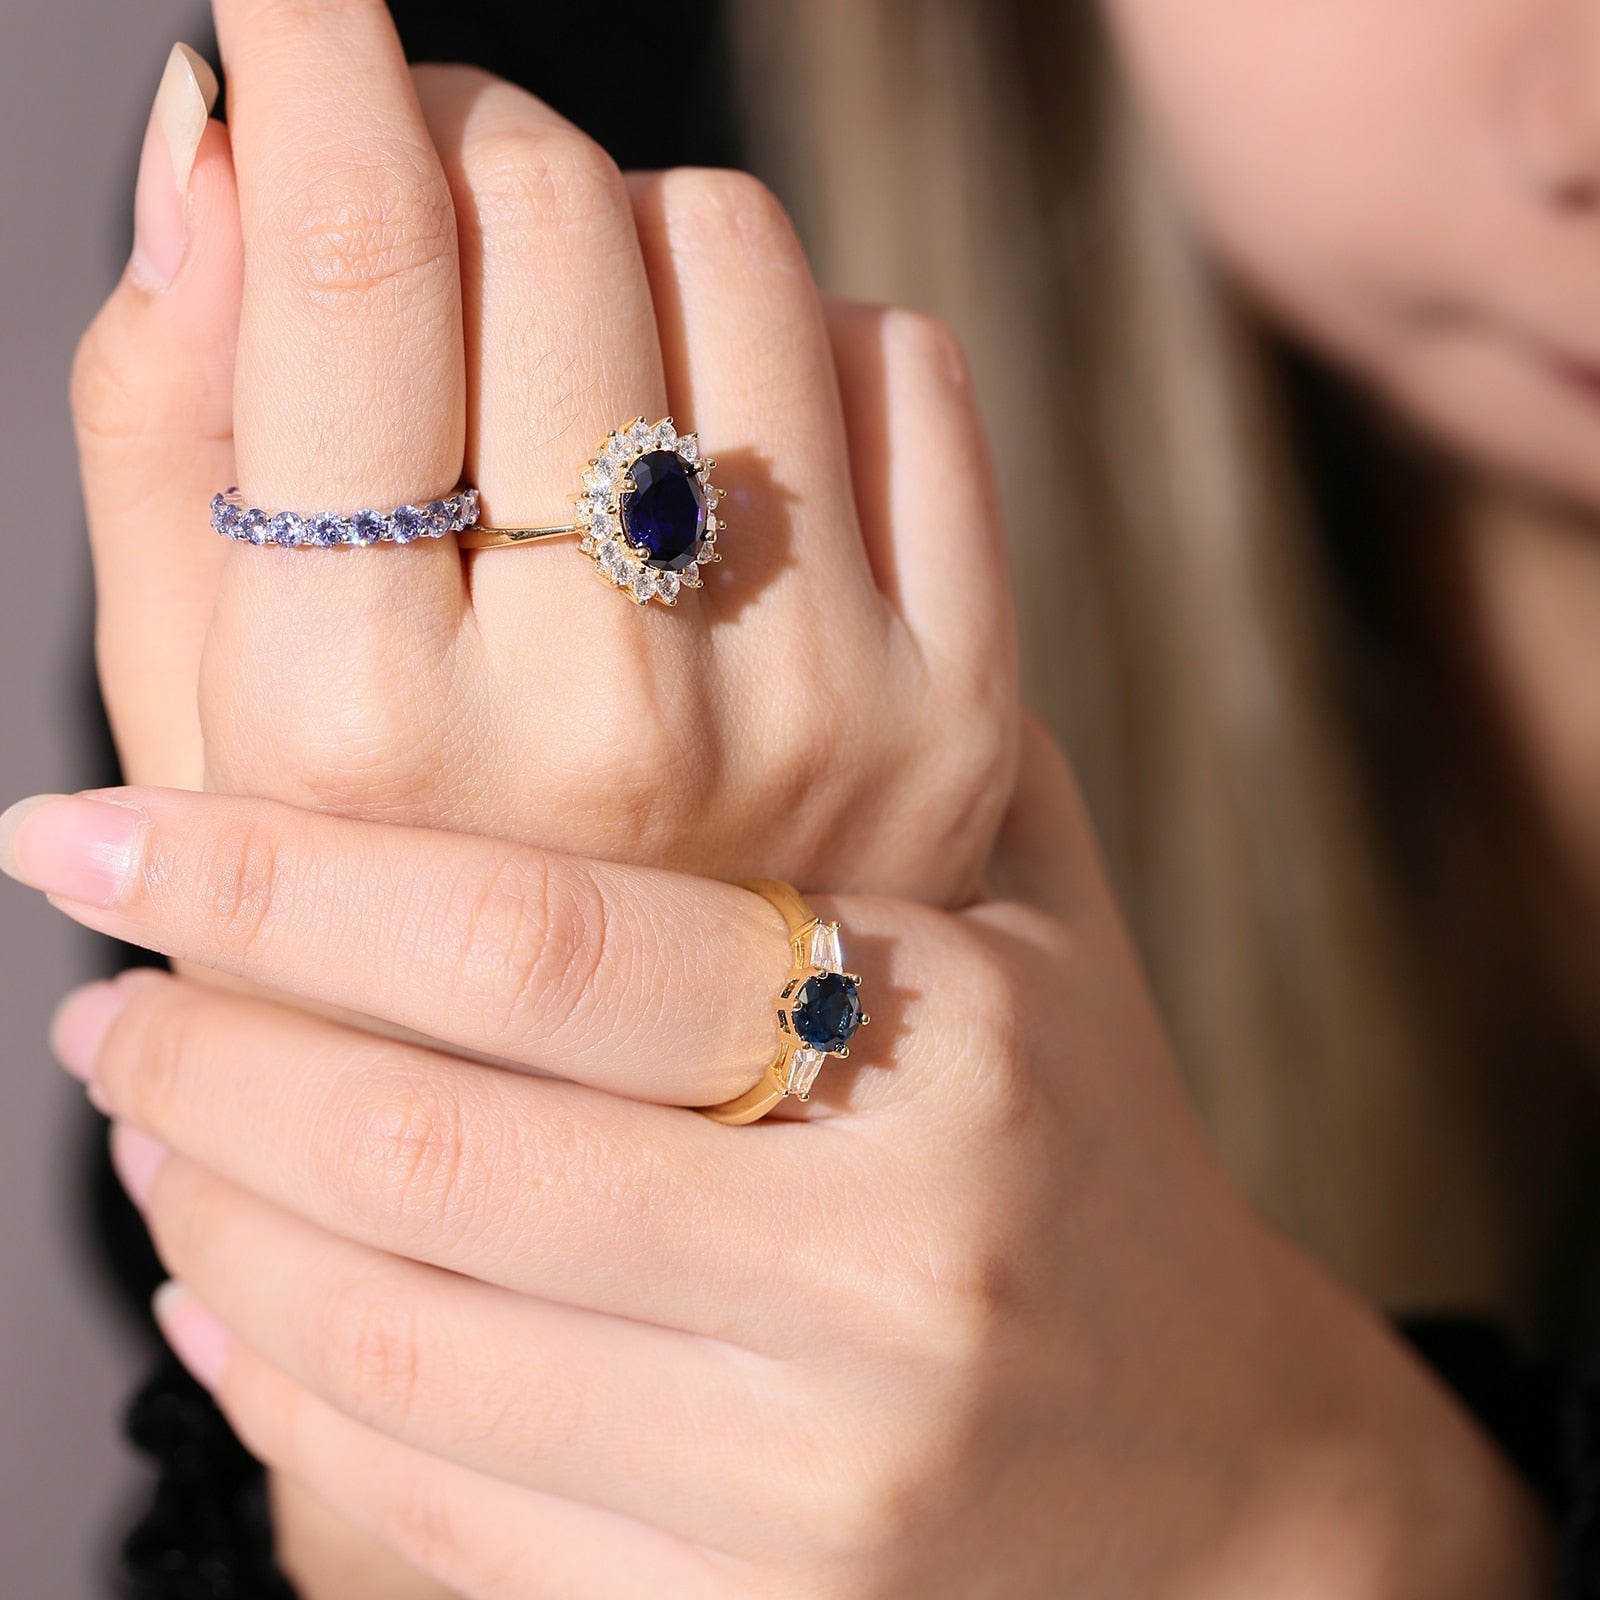 Buy MYKI Gorgeous Princess Ring for Women & Girls at Amazon.in